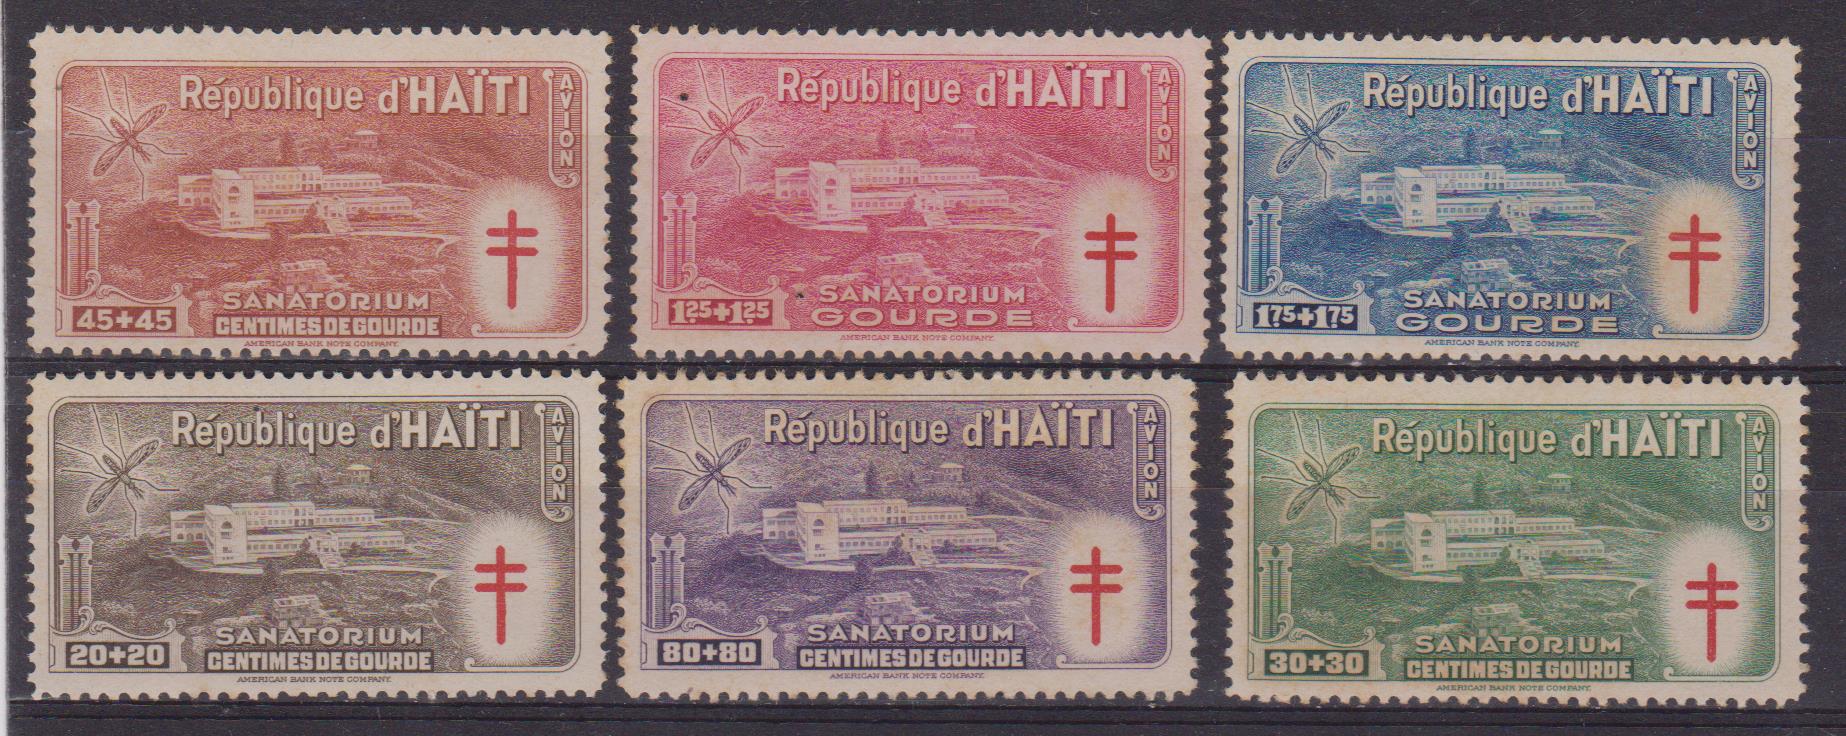 Haiti a47-a52 001